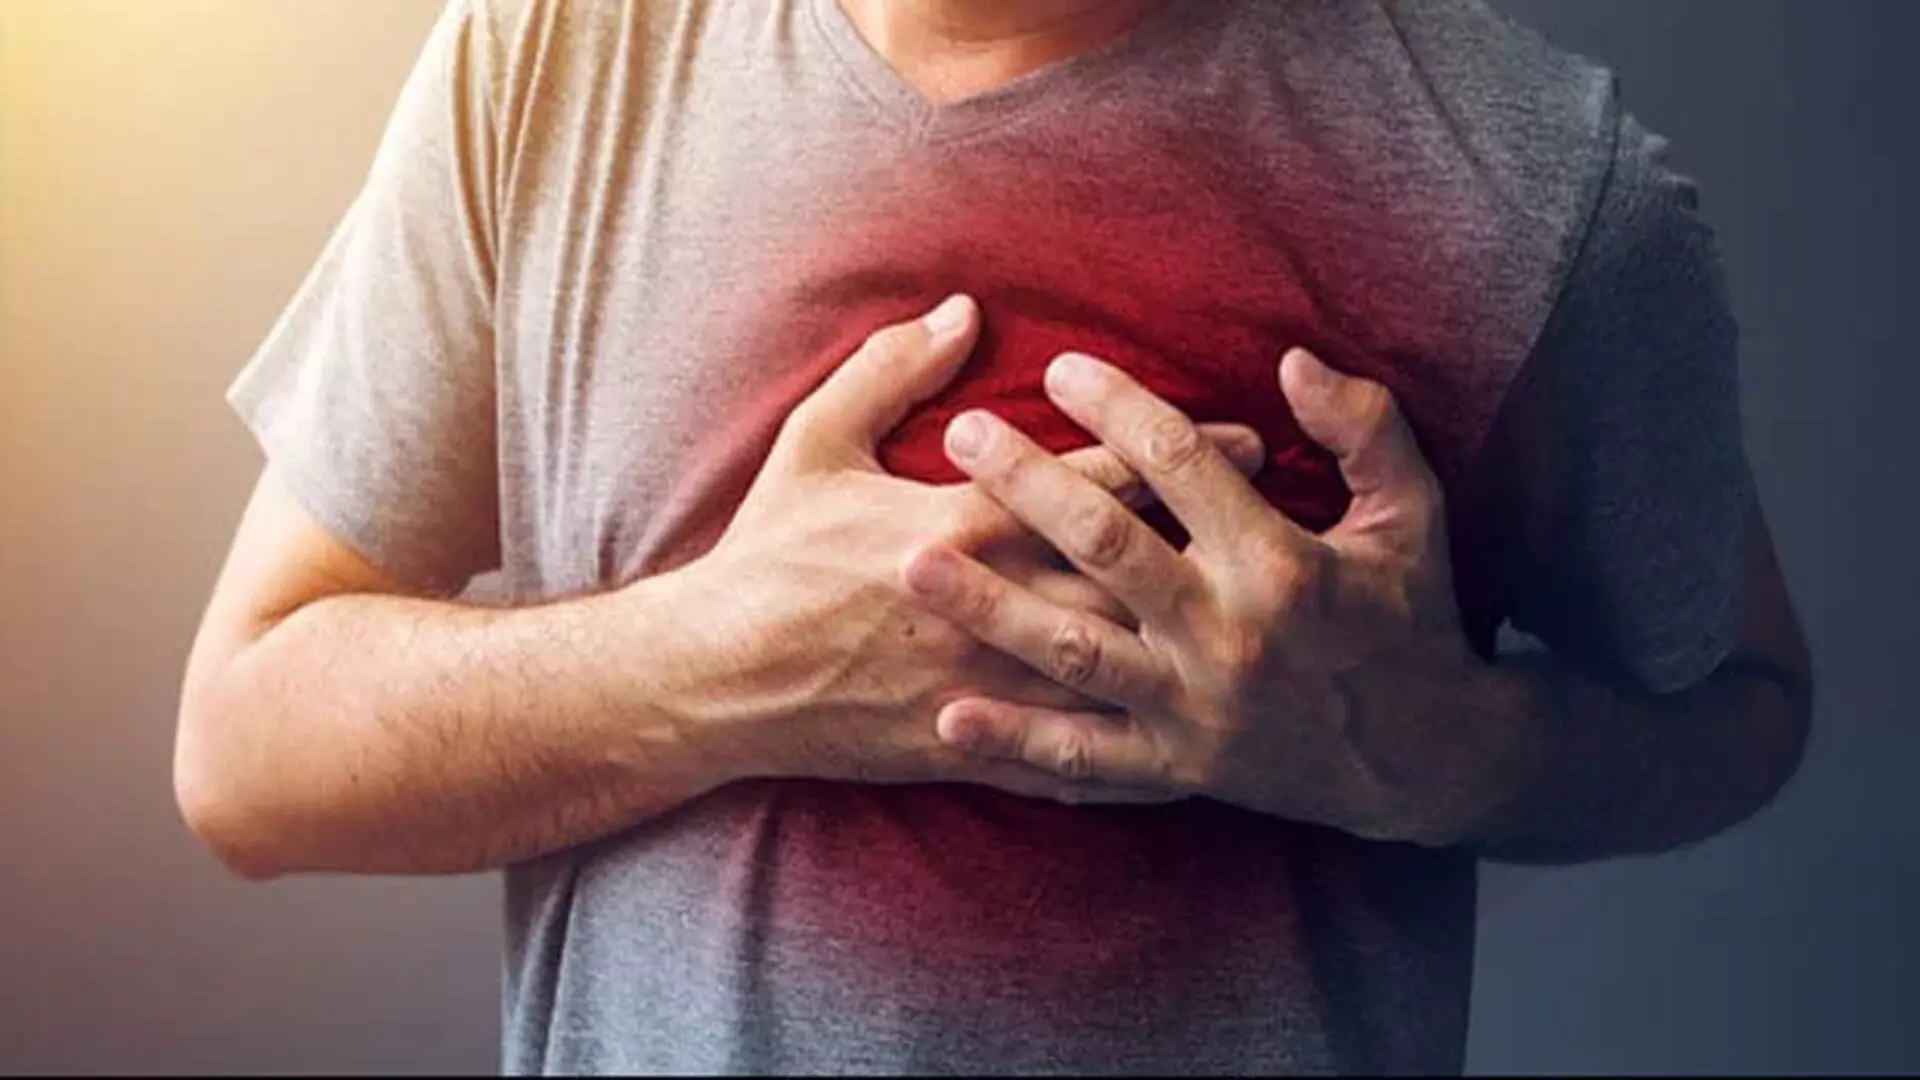 आंतरायिक उपवास हृदय रोग से मृत्यु के जोखिम से जुड़ा हुआ है: अध्ययन